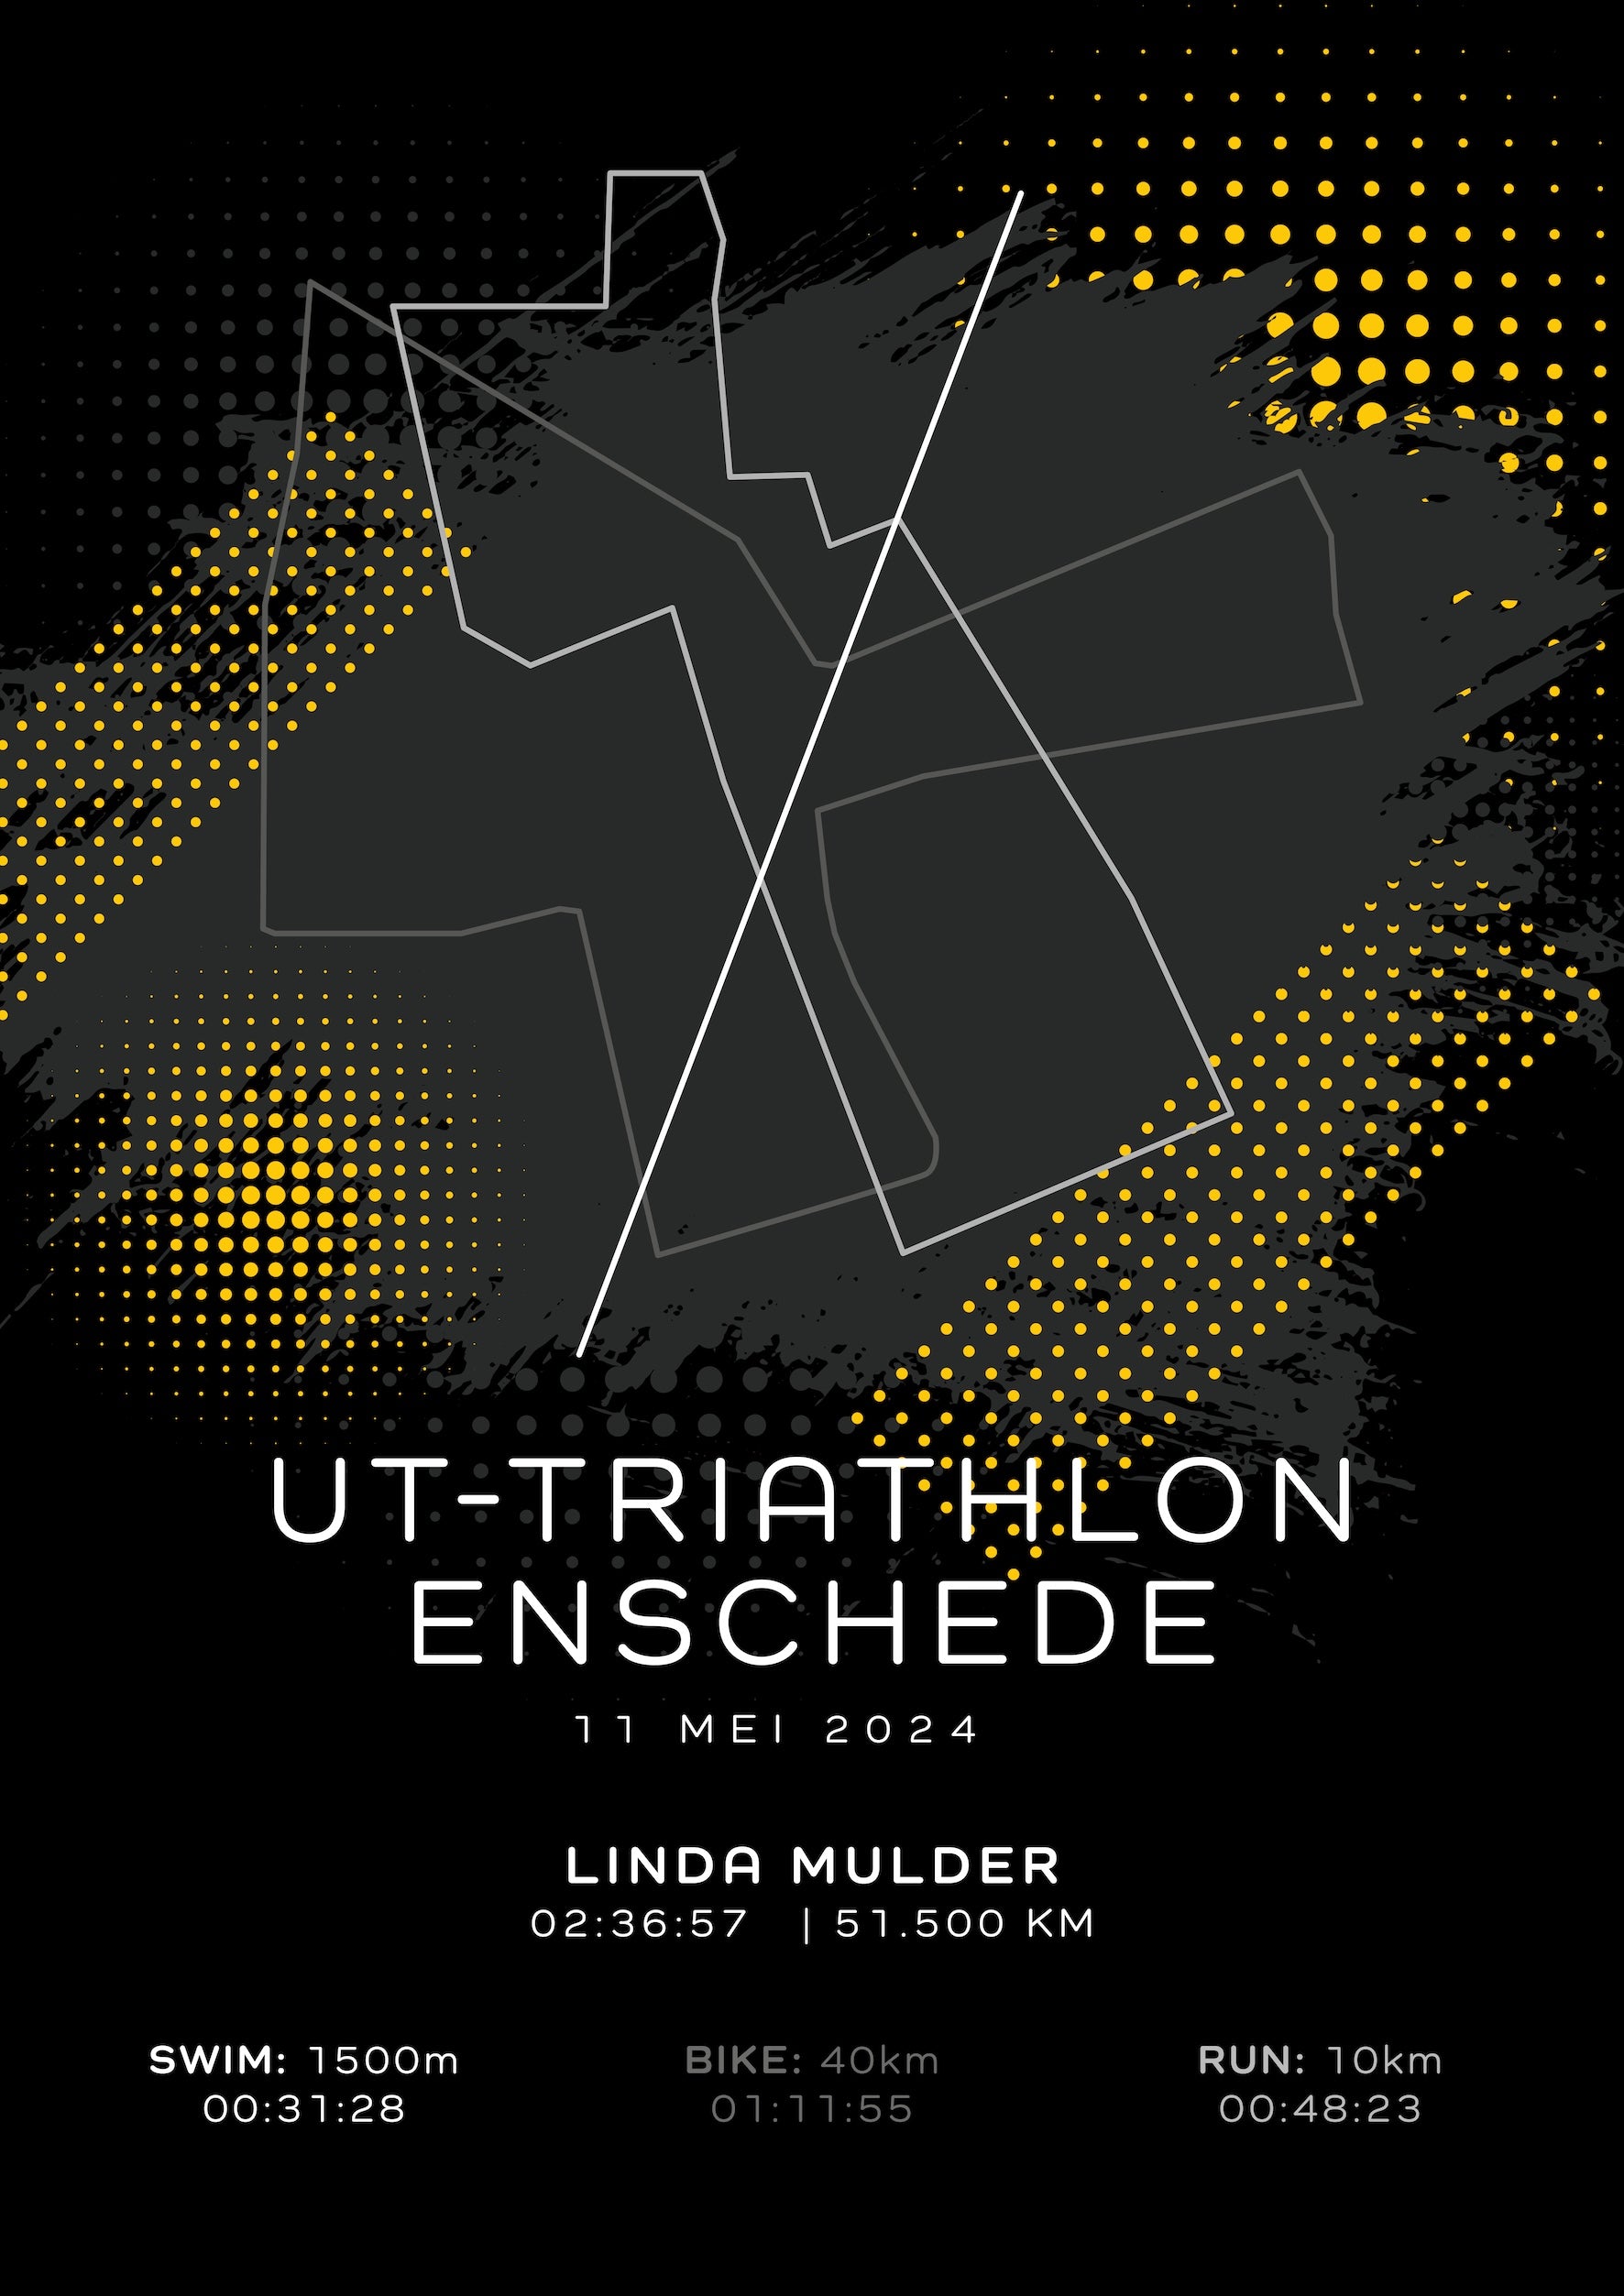 UT-Triathlon Enschede 2024 - Modern Dark - Poster